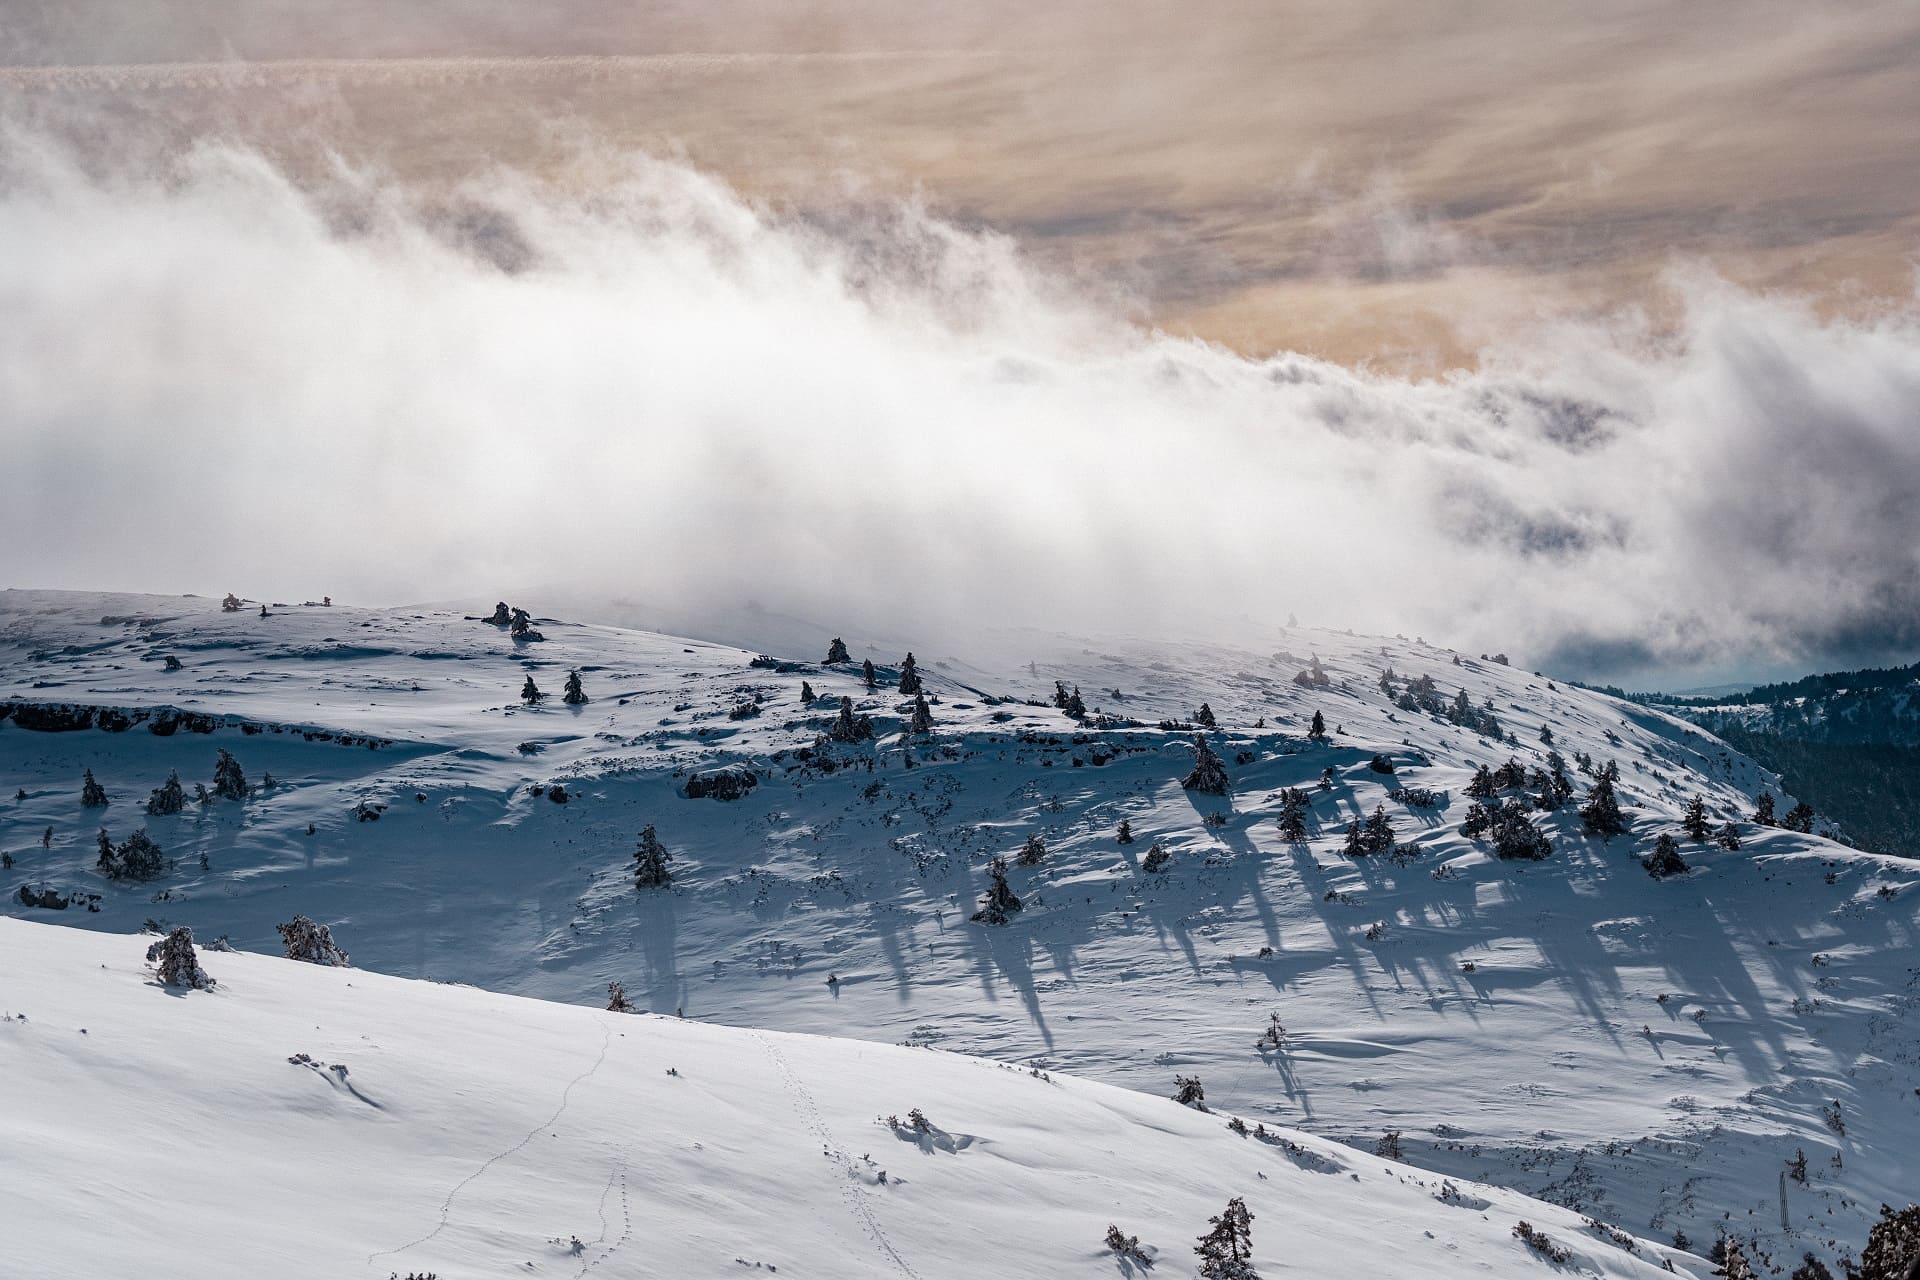 Estacion de esquí Aramón Javalambre-Valdelinares